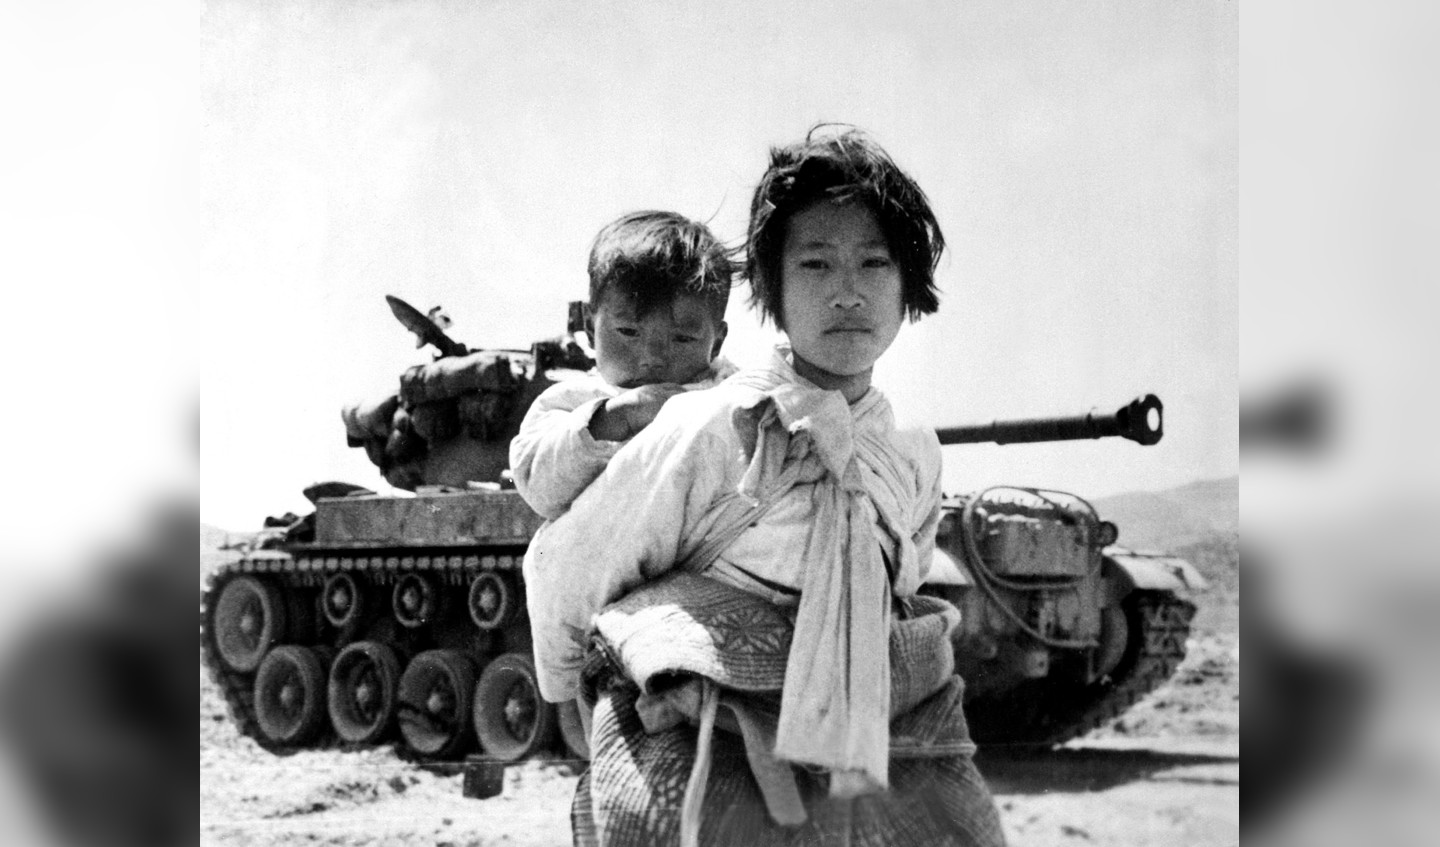 Met haar broertje op de rug sjokt een Koreaans meisje langs een vastgelopen M-26 tank. Deze foto werd genomen bij de Koreaanse plaats Haengju op 9 juni 1951.